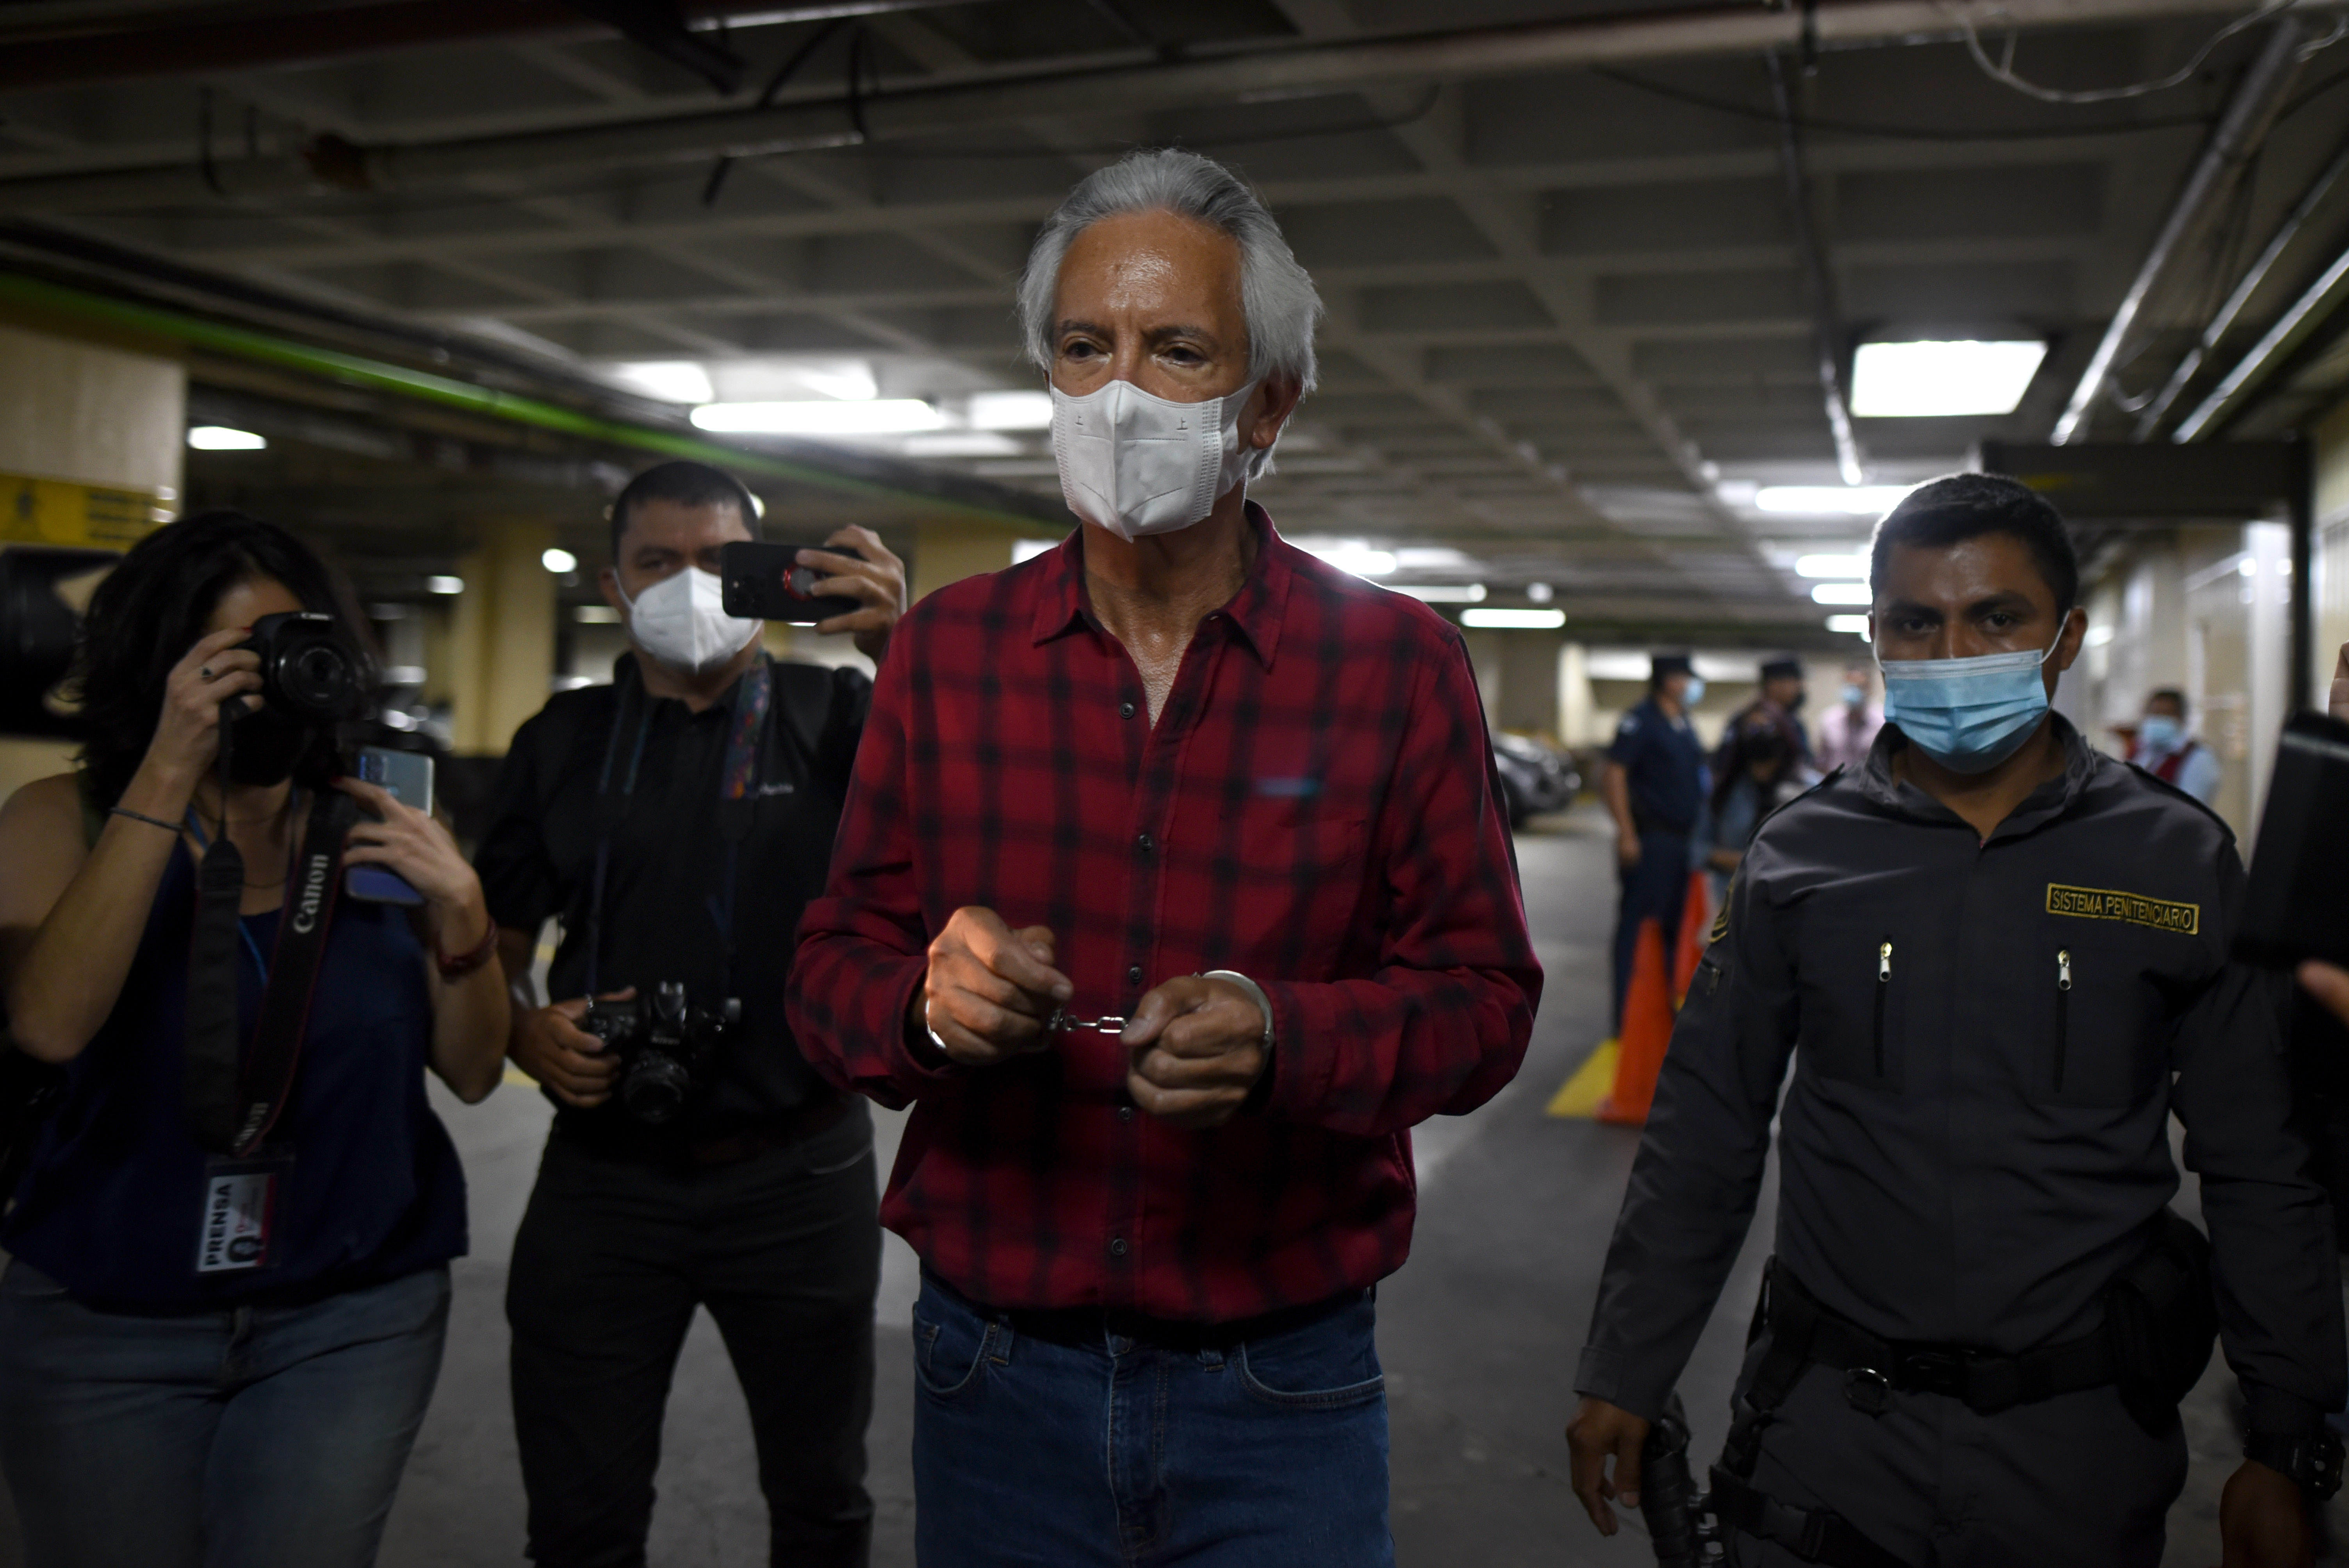 Periodistas y ciudadanos muestran su apoyo a Jose Rubén Zamora, entre las consigas está “No nos callarán”